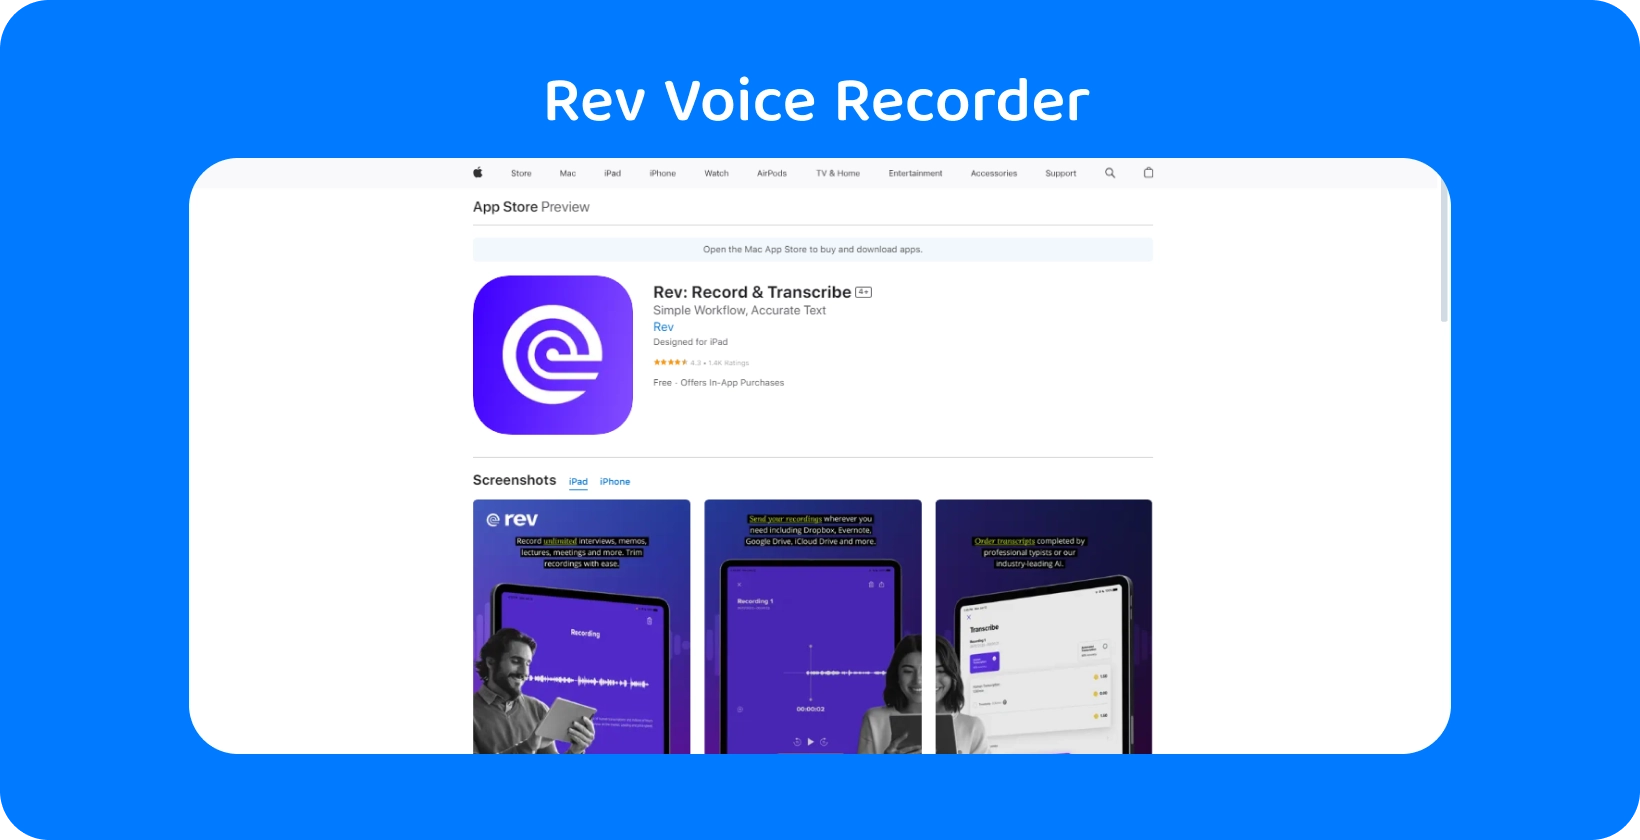 Rev Voice Recorder alkalmazást a Apple App Store, kiemelve elegáns kialakítását és átírási funkcióit.